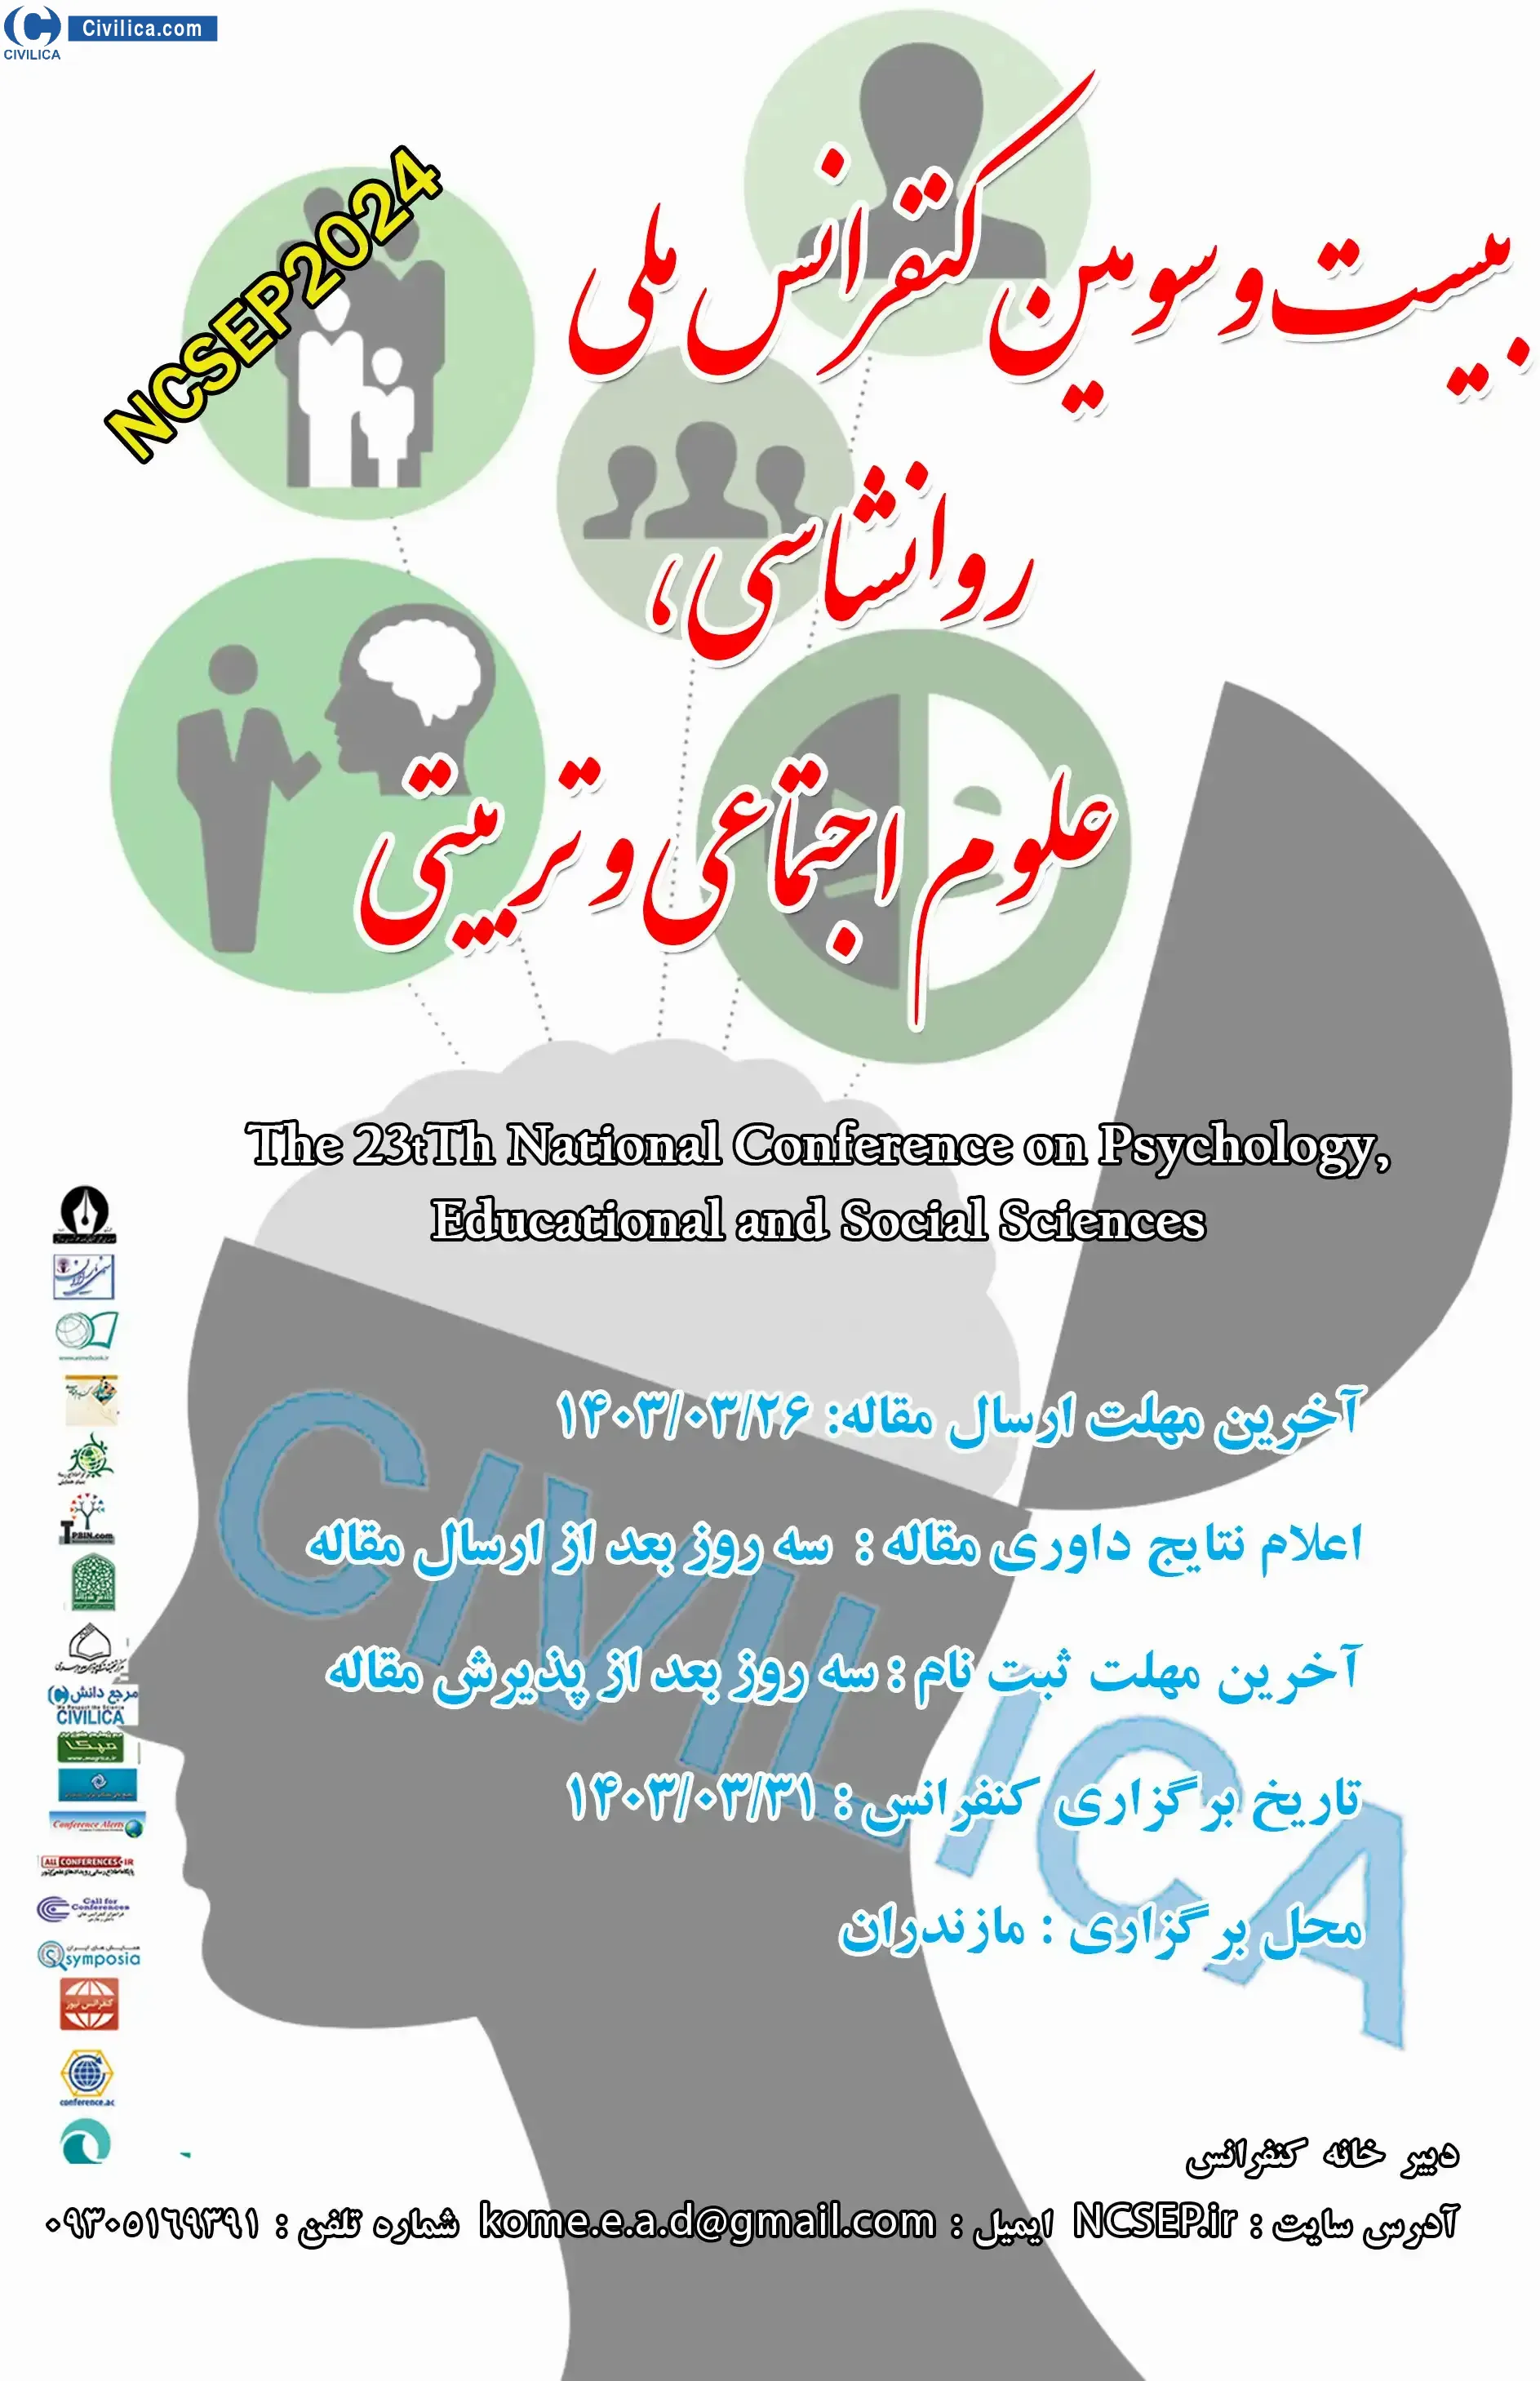 بیست و سومین کنفرانس ملی روانشناسی، علوم تربیتی و اجتماعی